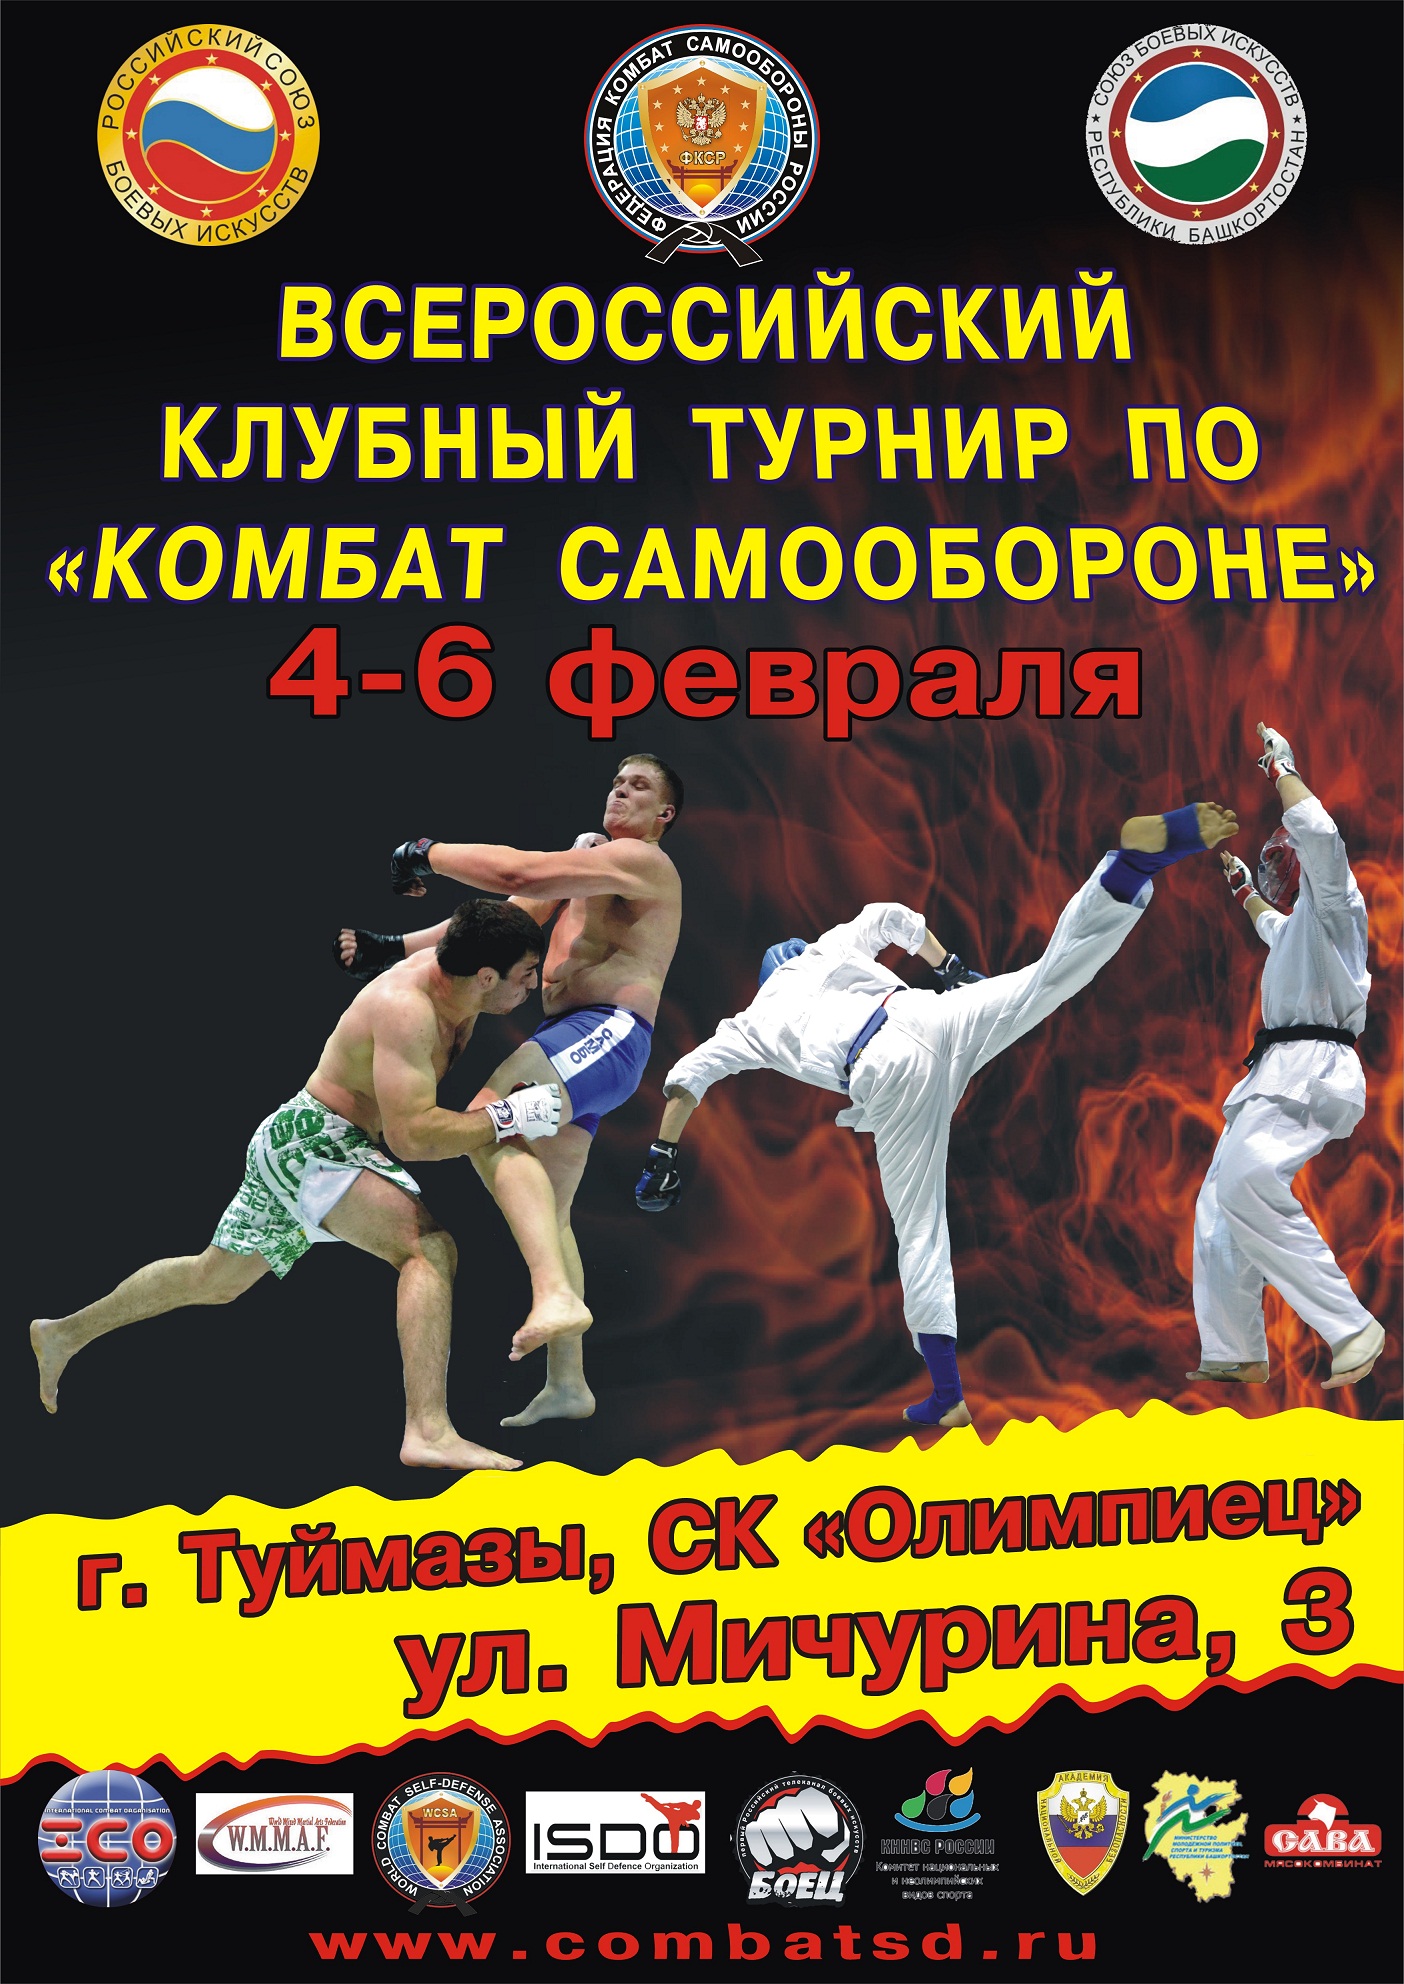 http://sbirb.combatsd.ru/images/upload/Афиша_Всероссийский_отборочный_турнир.jpg